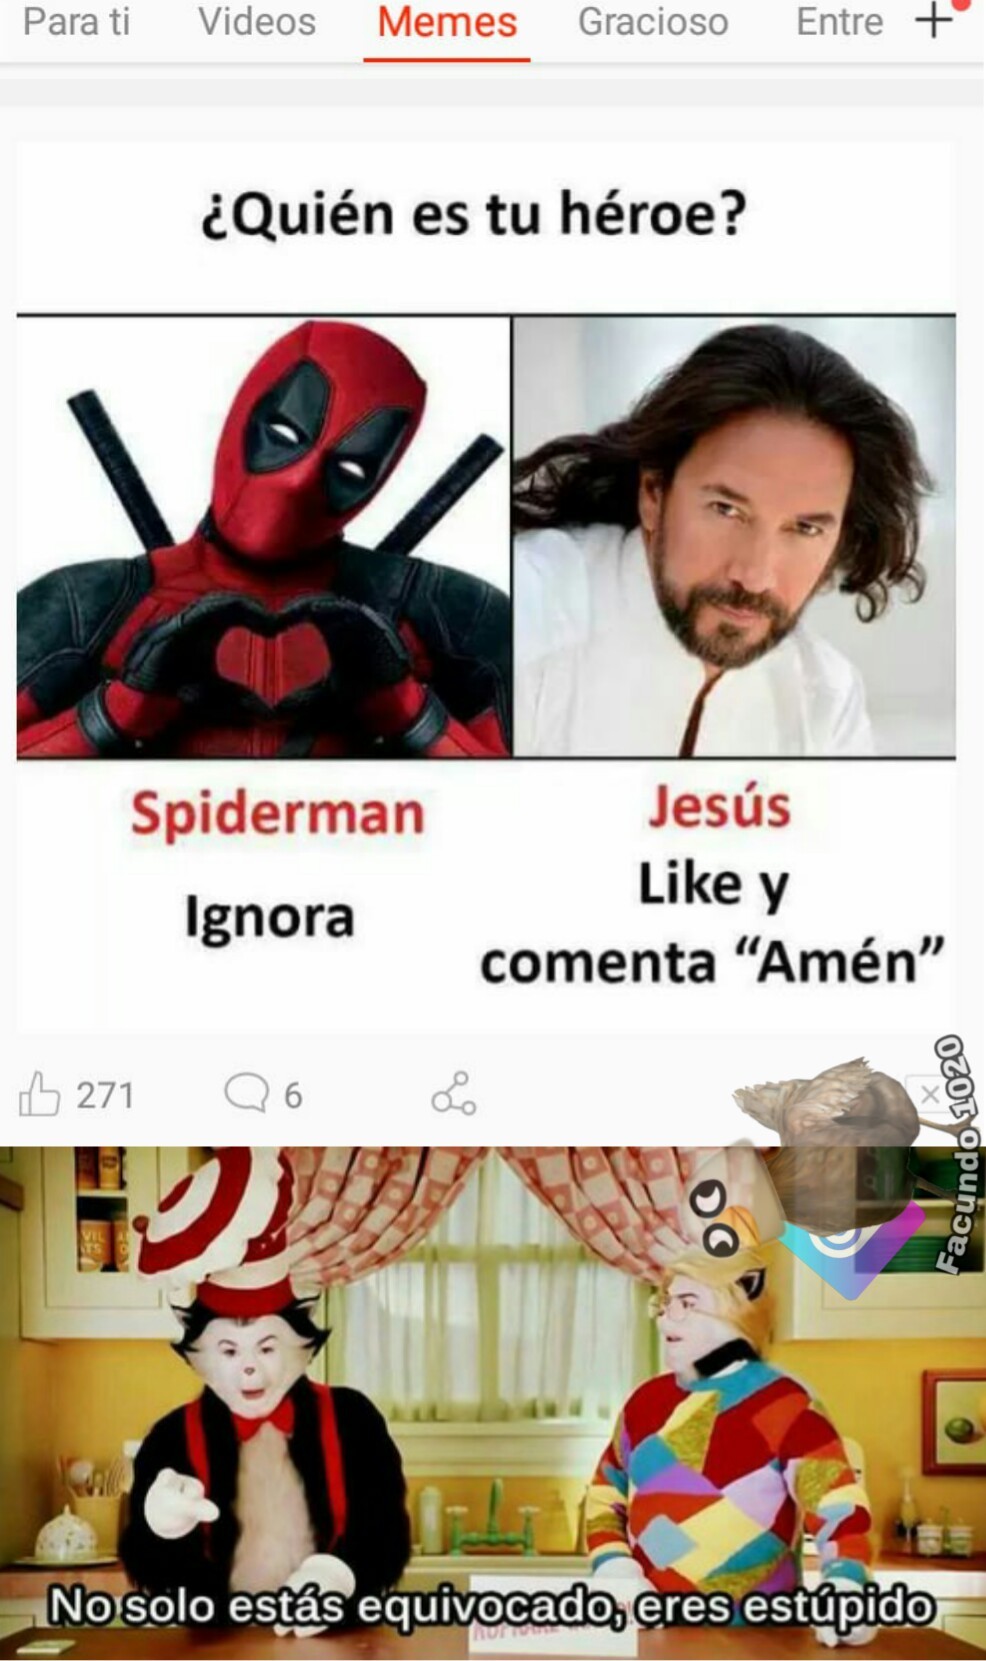 El "Jesus" es Marco Antonio Solís >.< - meme